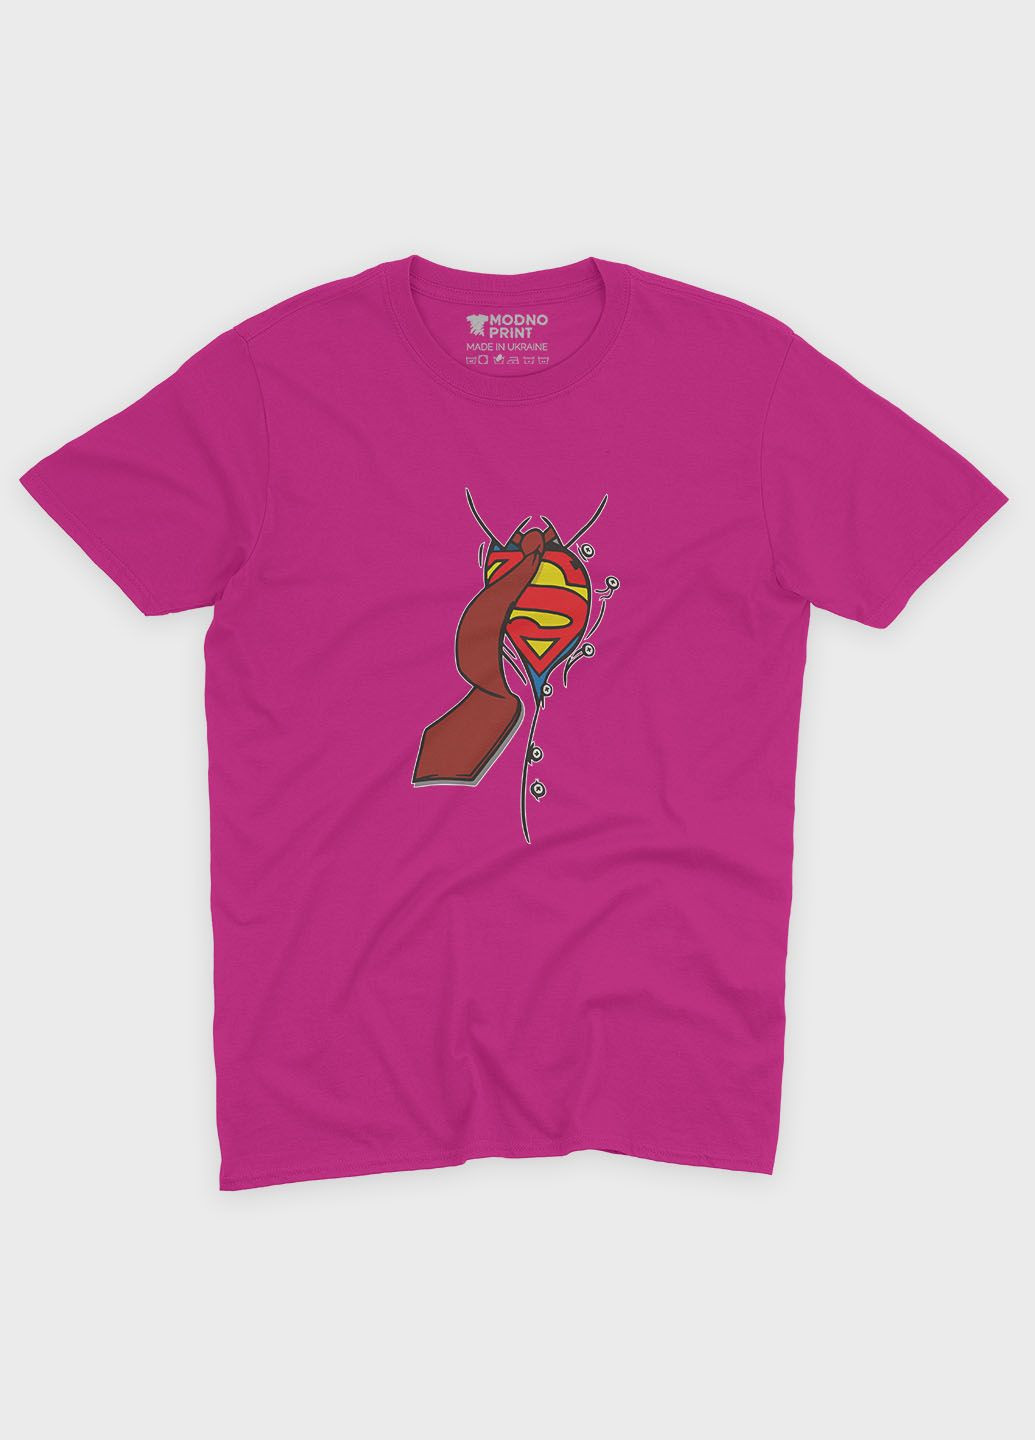 Розовая демисезонная футболка для девочки с принтом супергероя - супермэн (ts001-1-fuxj-006-009-002-g) Modno